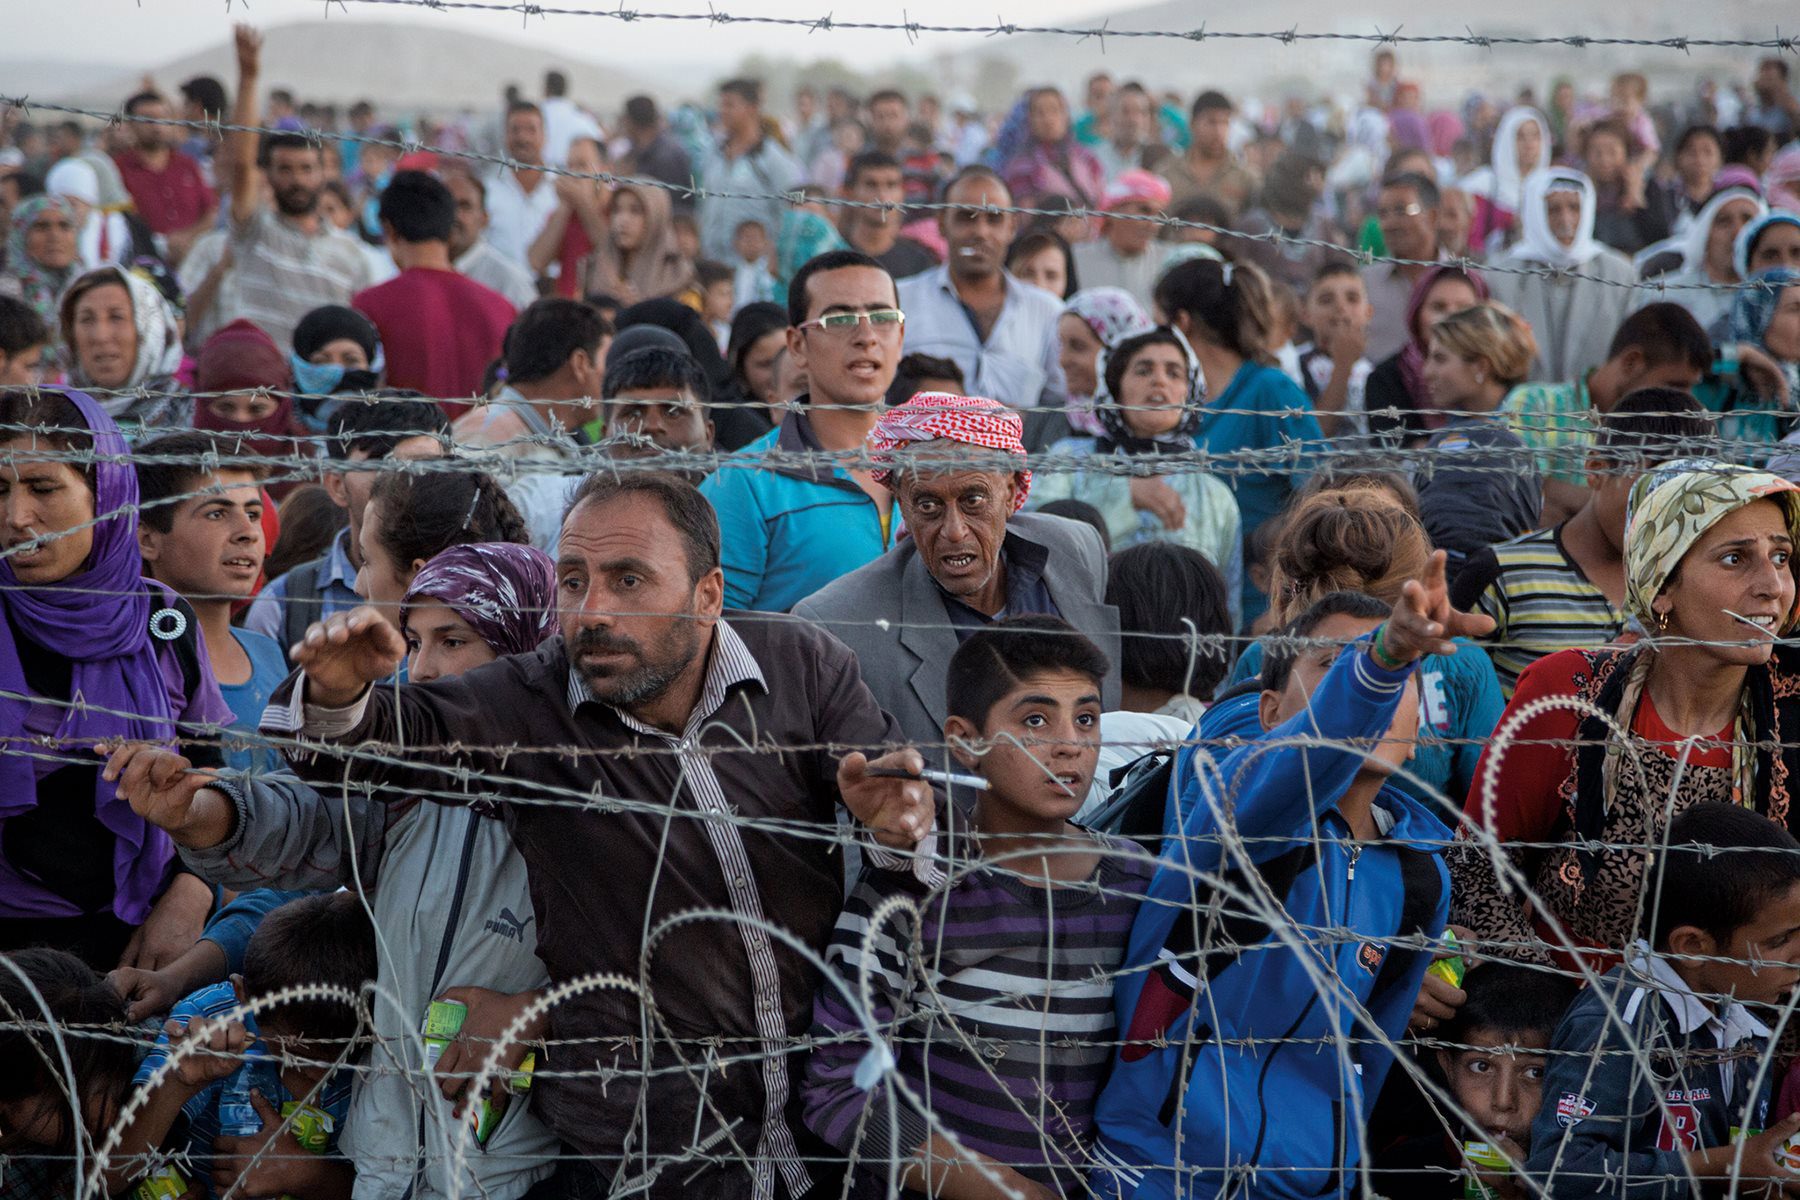 Las políticas migratorias evidencian el fracaso de la Europa social